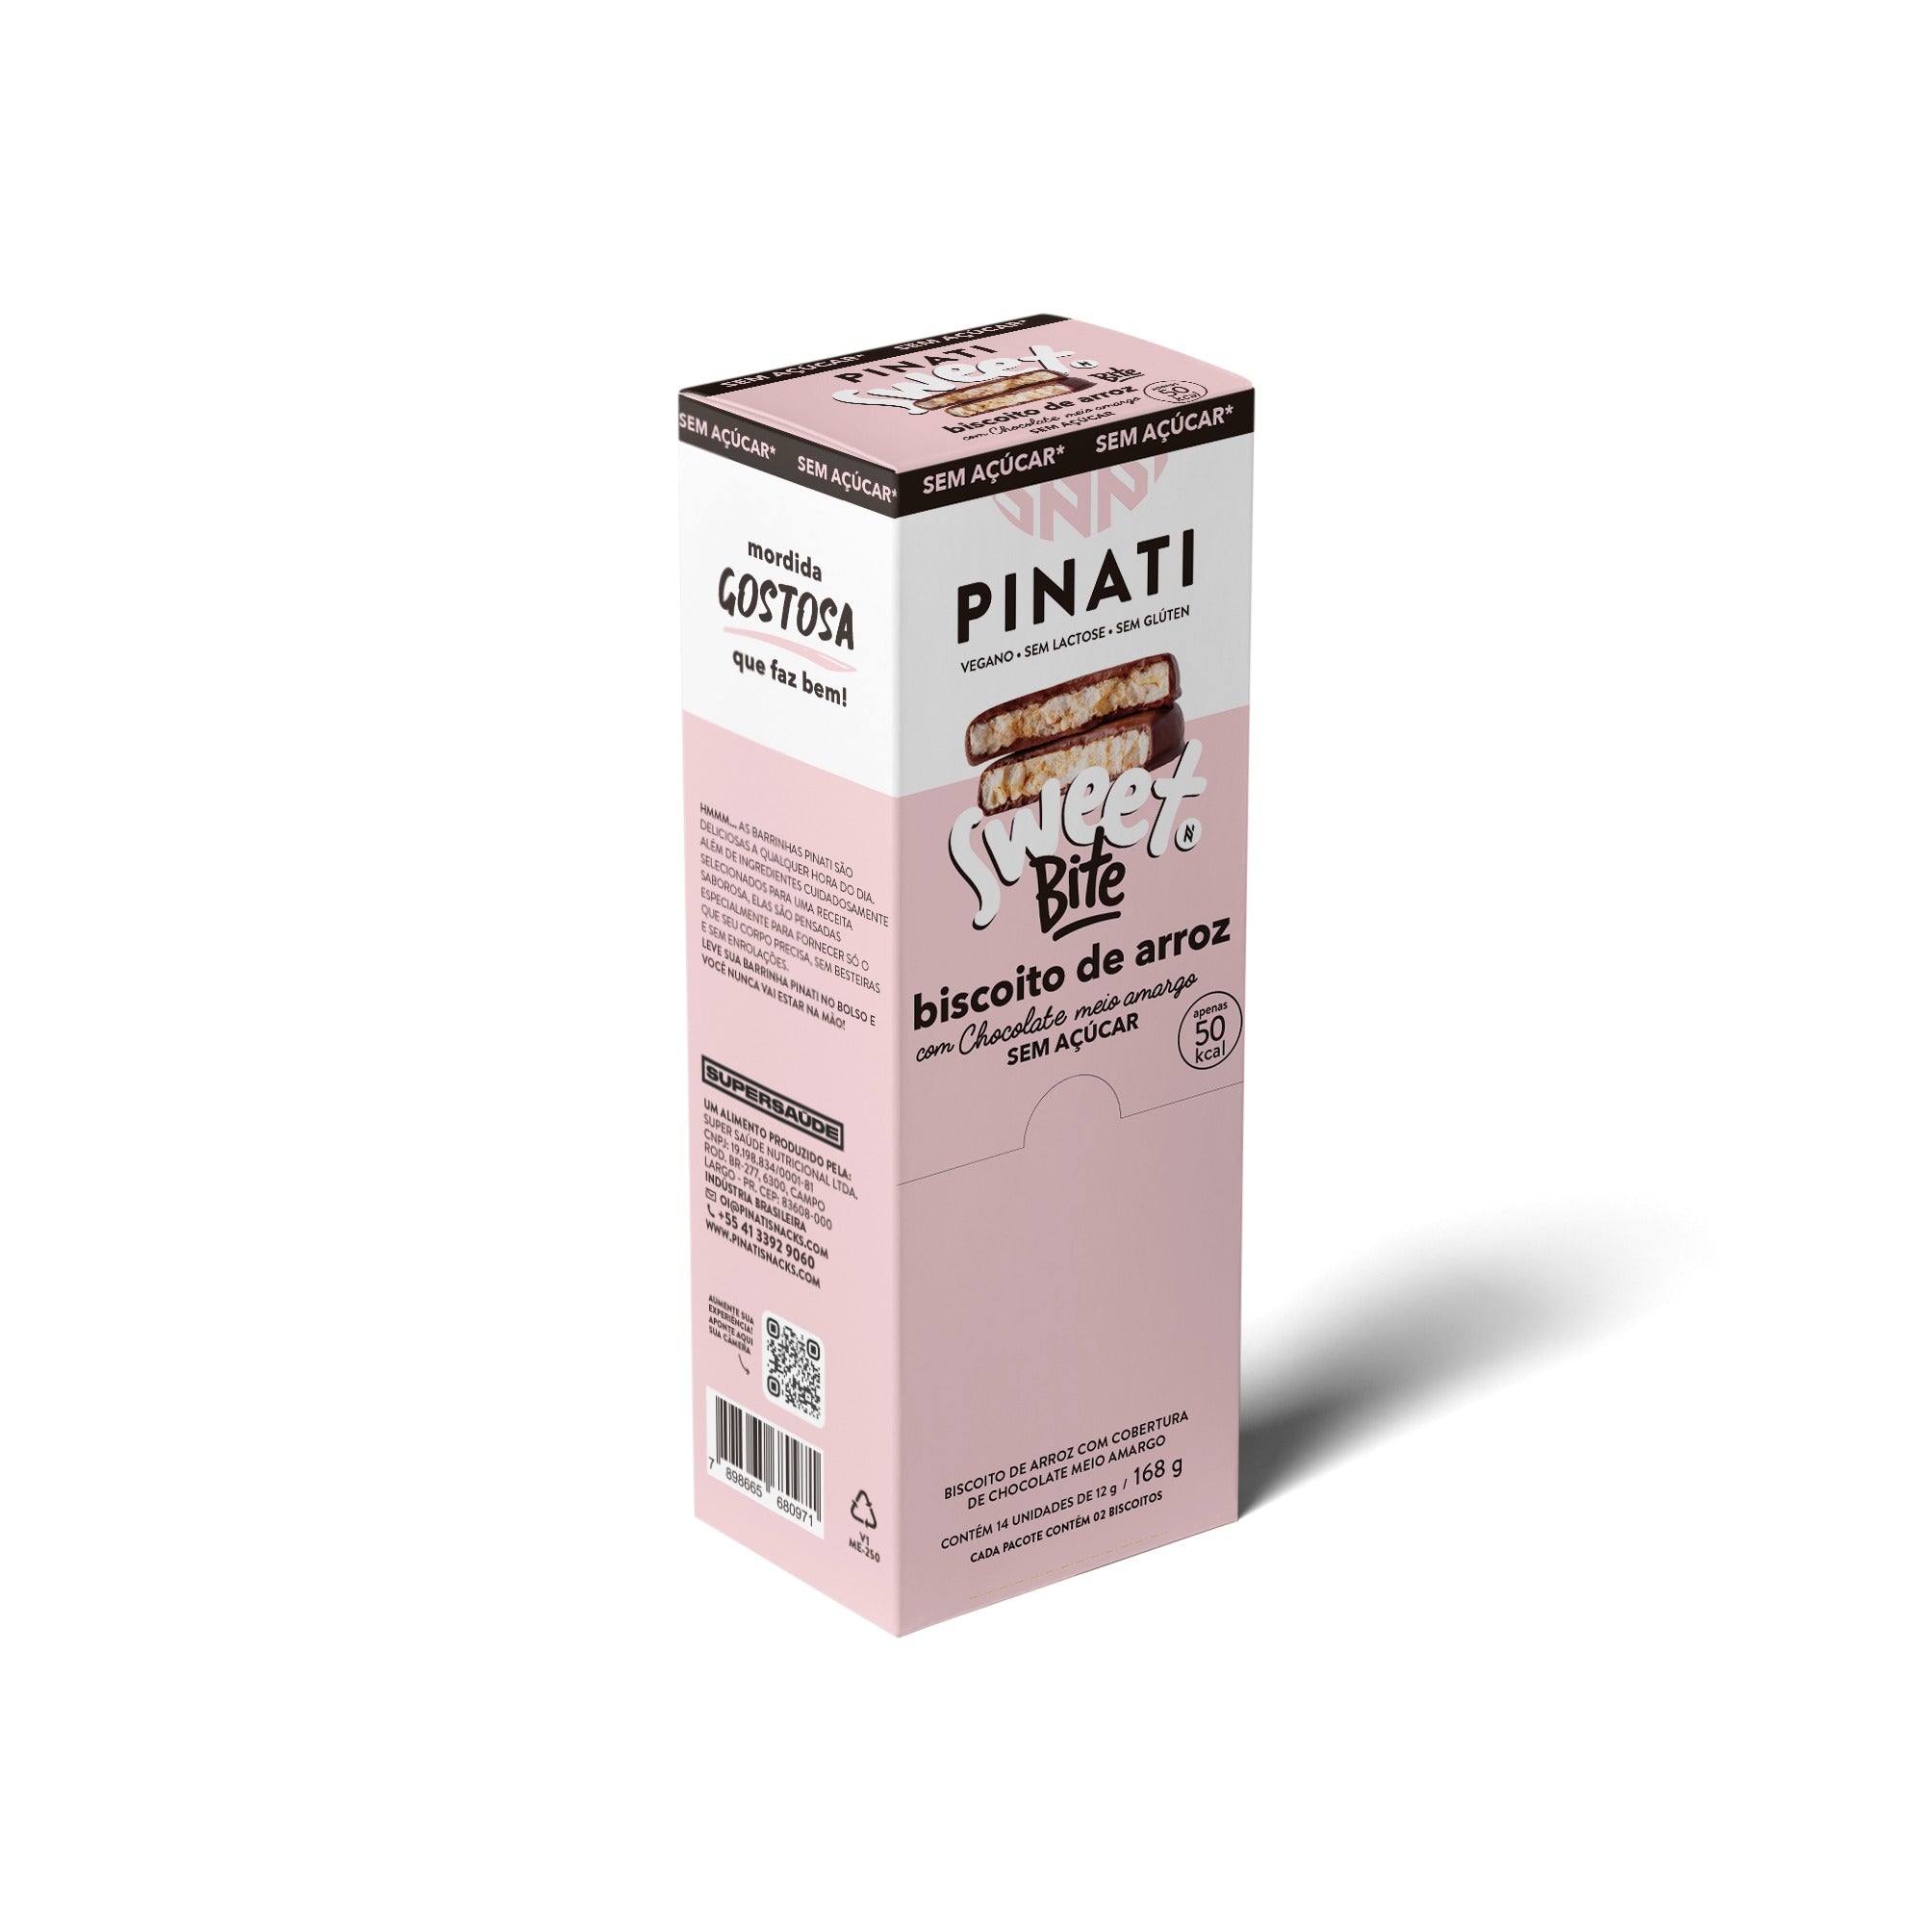 14x12g PINATI  SWEET BITE BISCOITO DE ARROZ COM COBERTURA DE CHOCOLATE